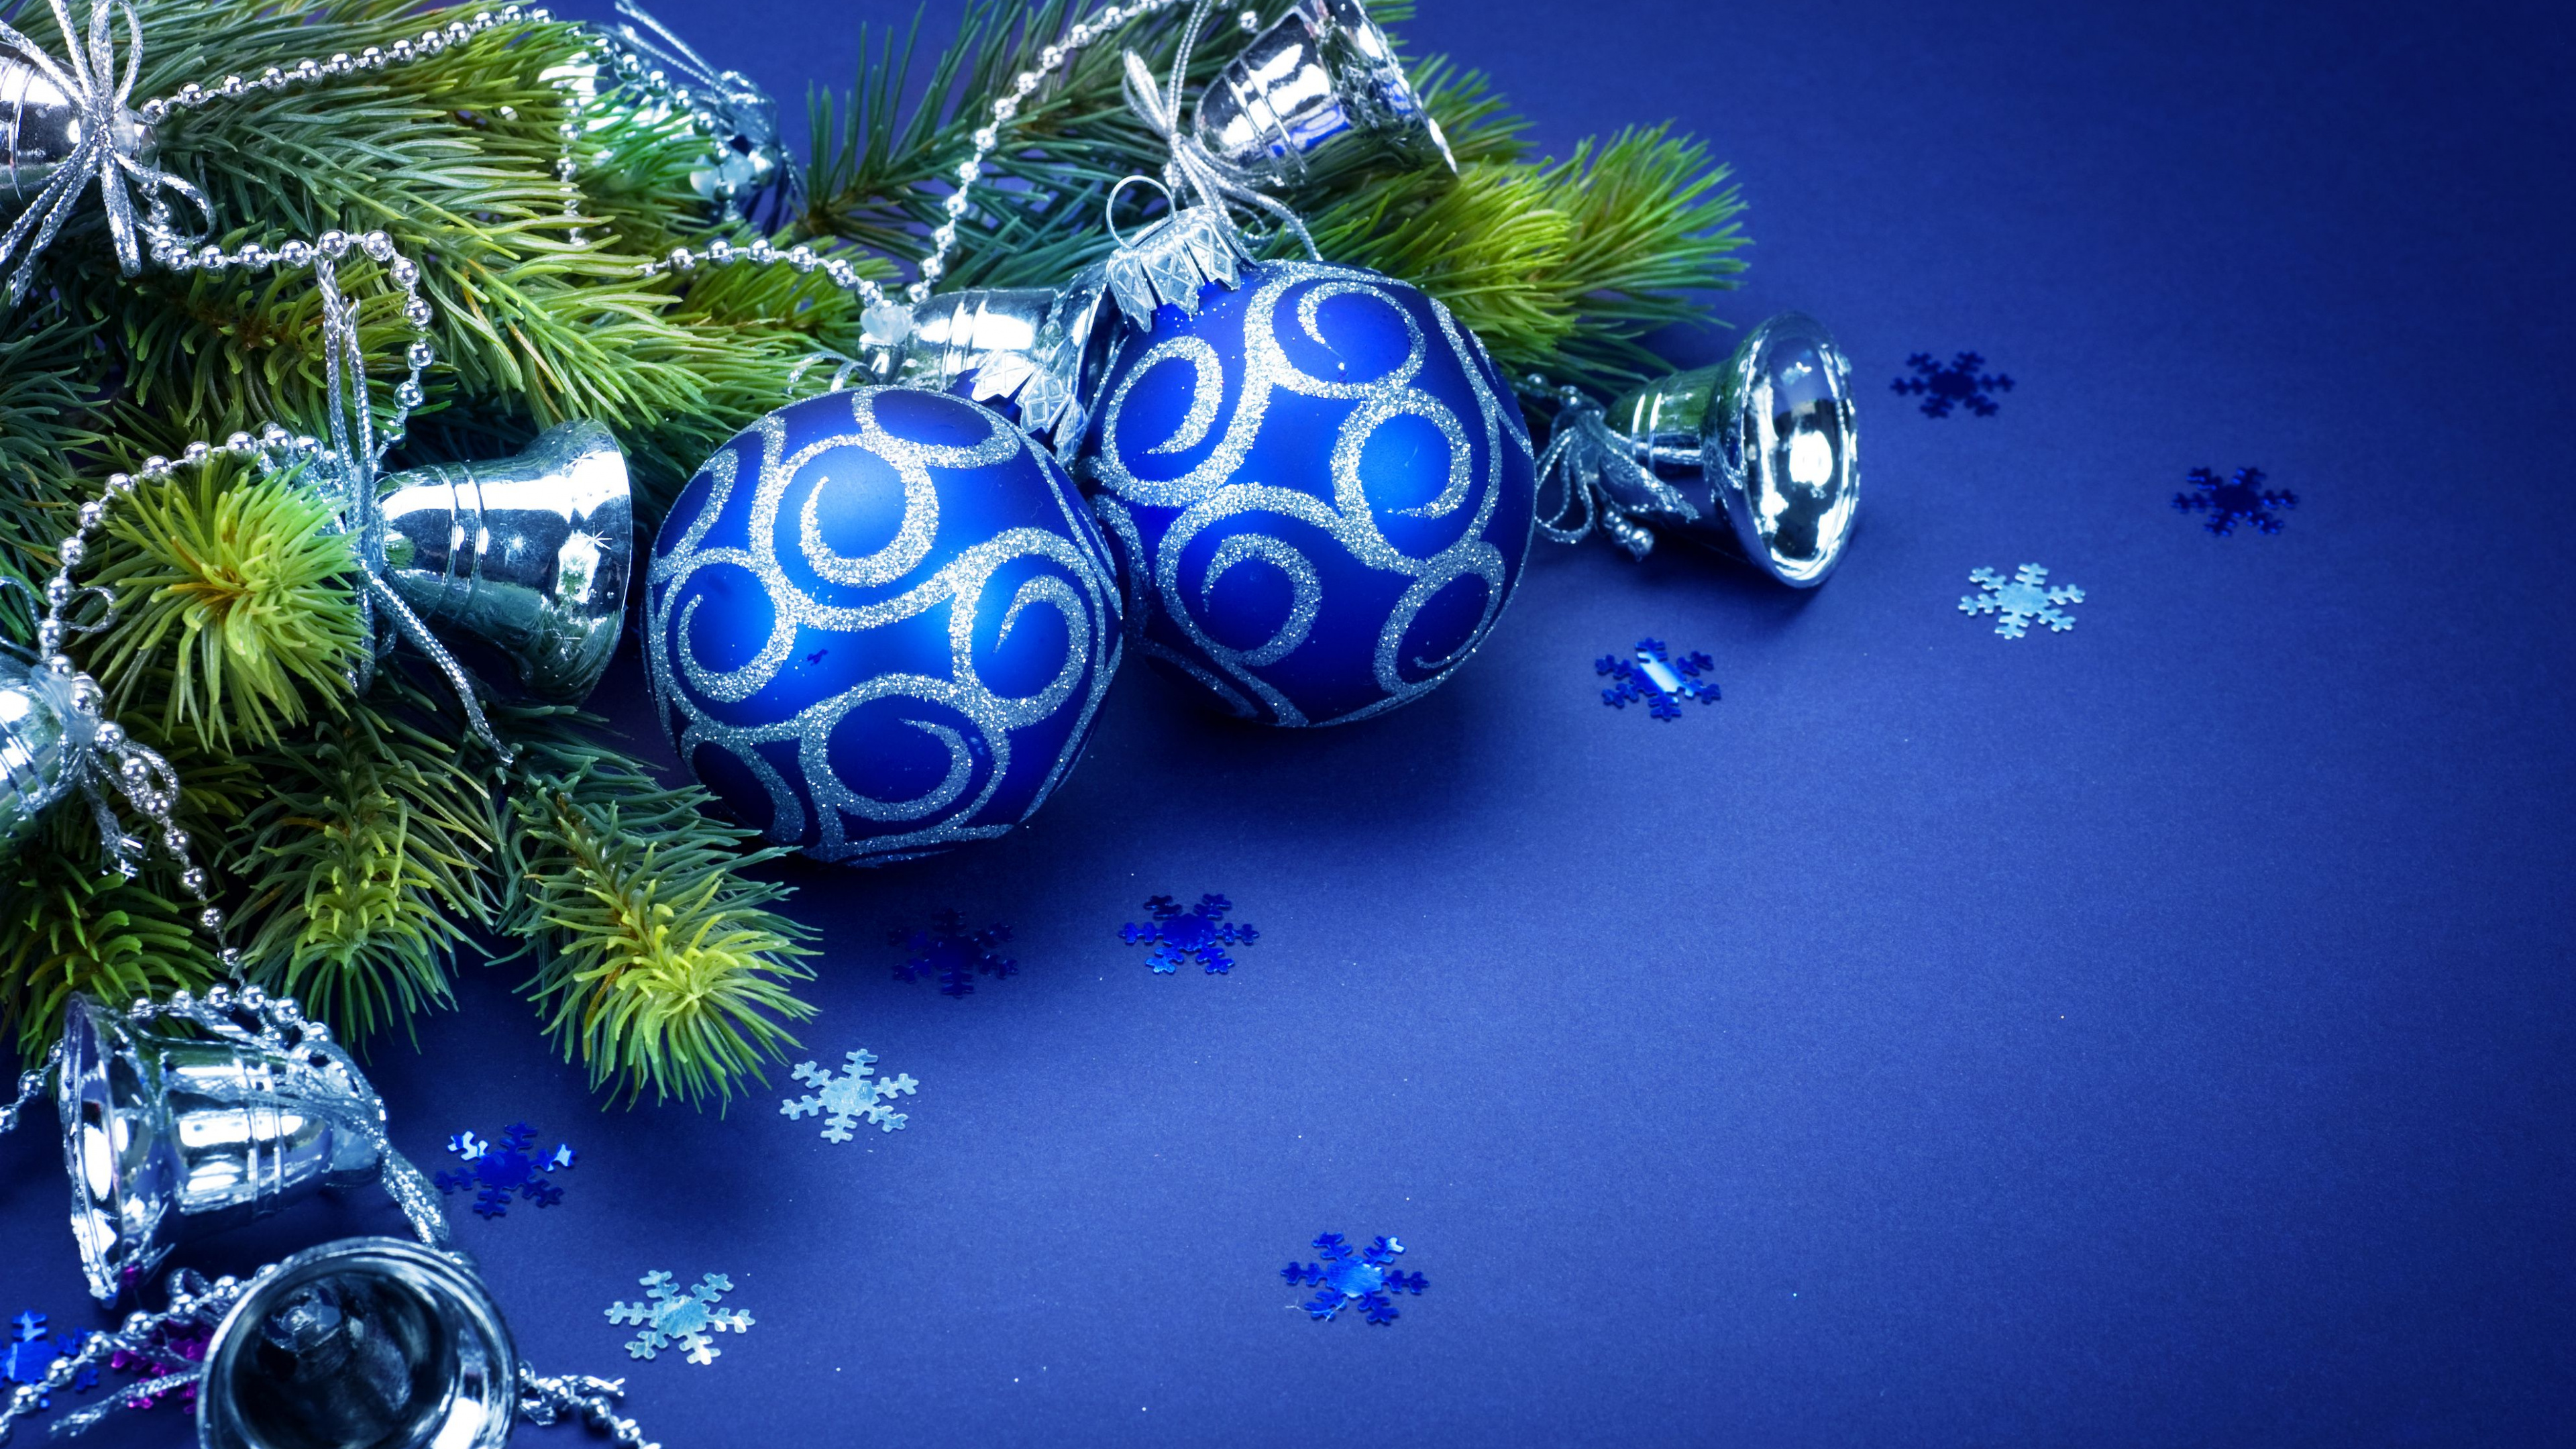 Le Jour De Noël, Ornement de Noël, Blue, Décoration de Noël, Arbre de Noël. Wallpaper in 3840x2160 Resolution